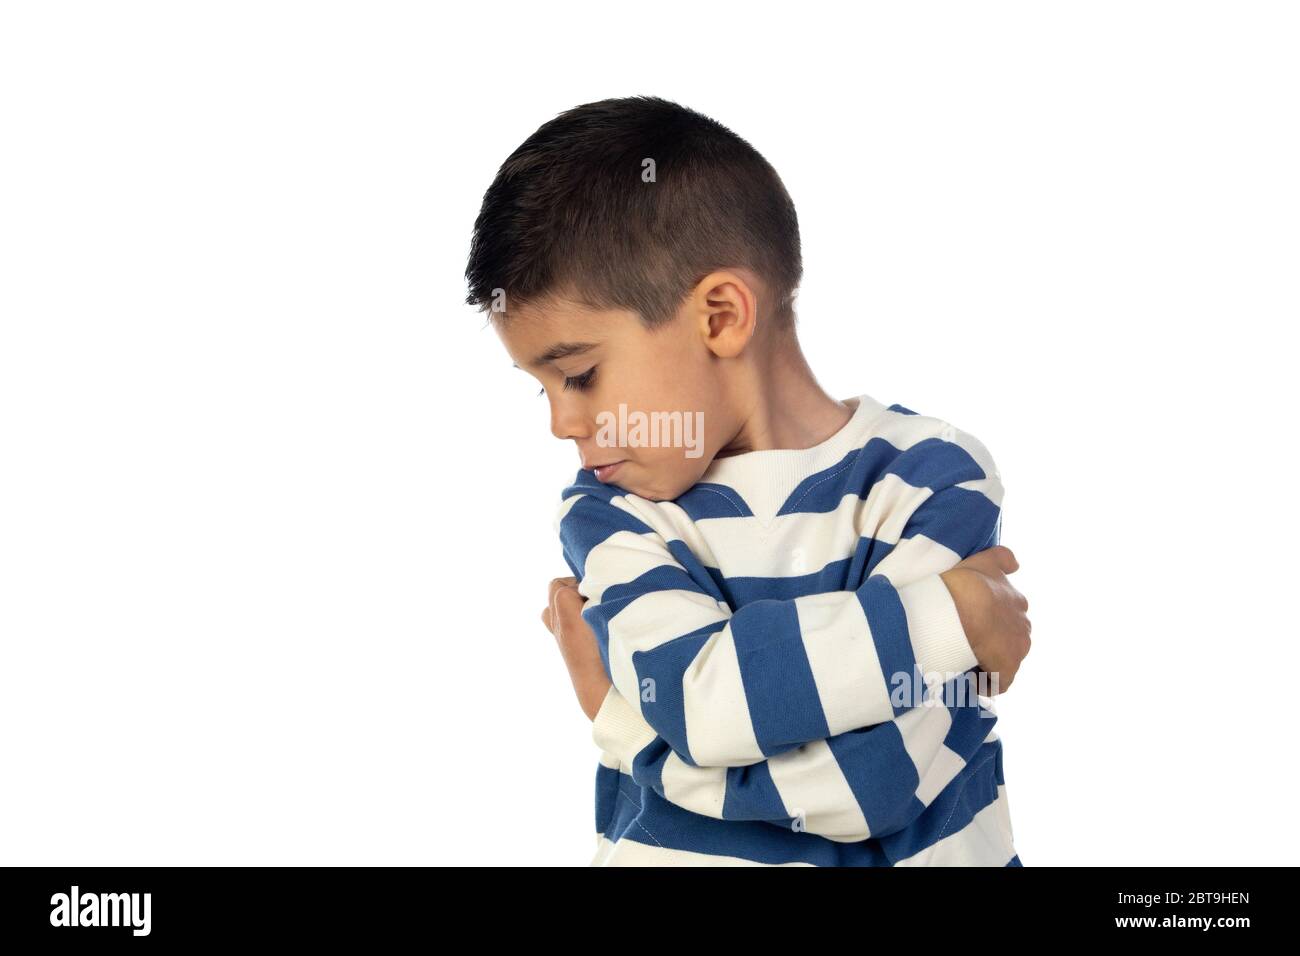 Sad latin child isolated on a white background Stock Photo